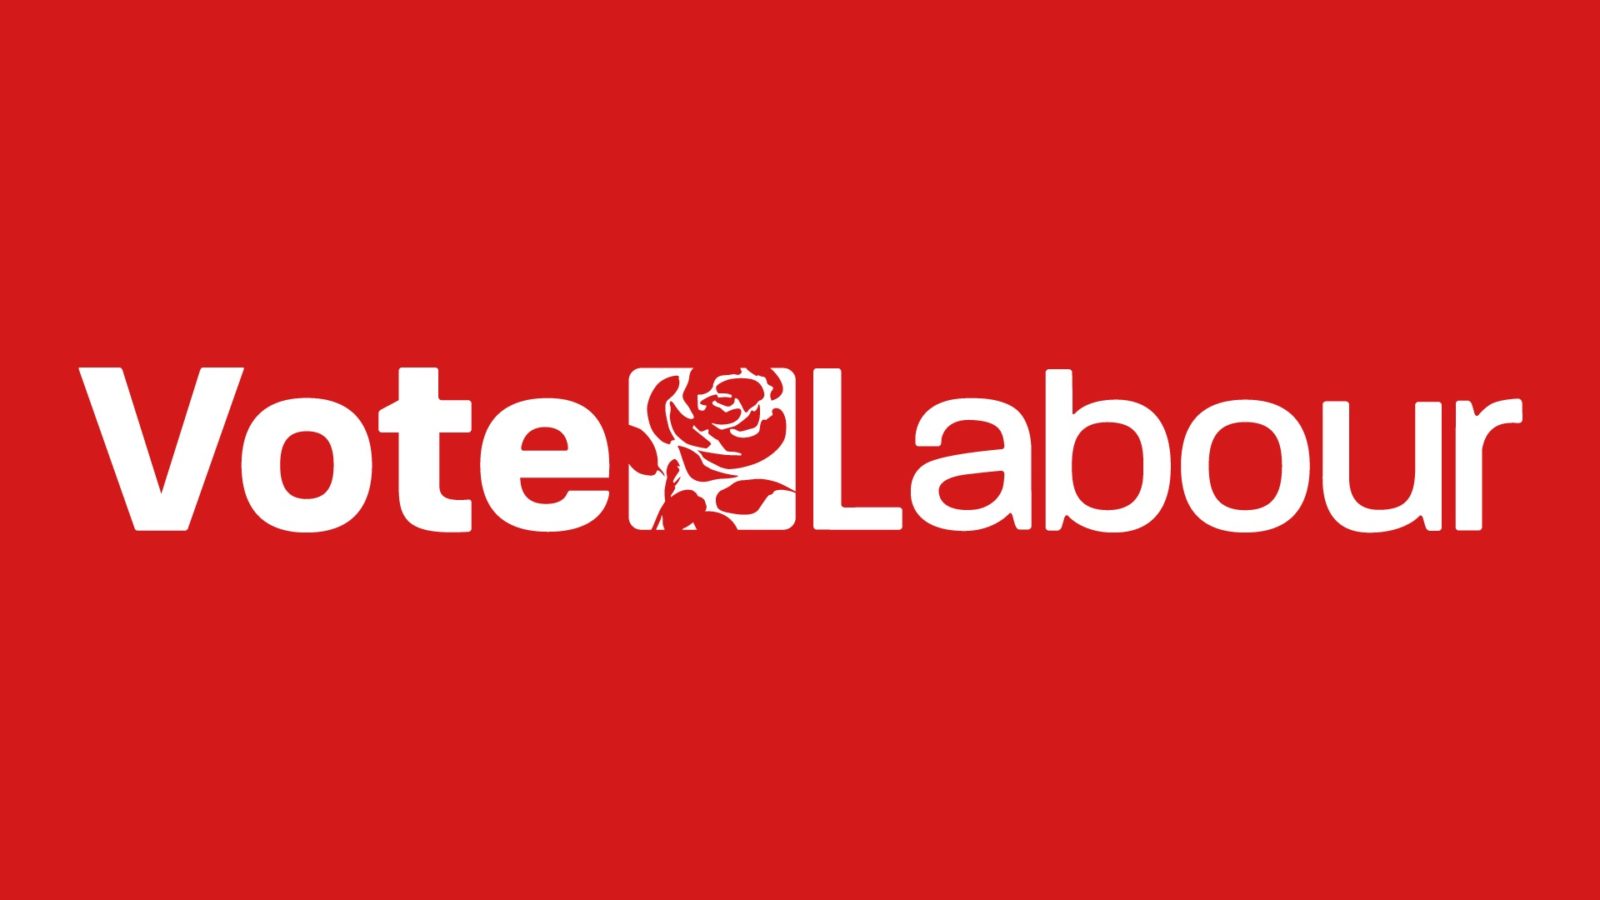 Vote Labour